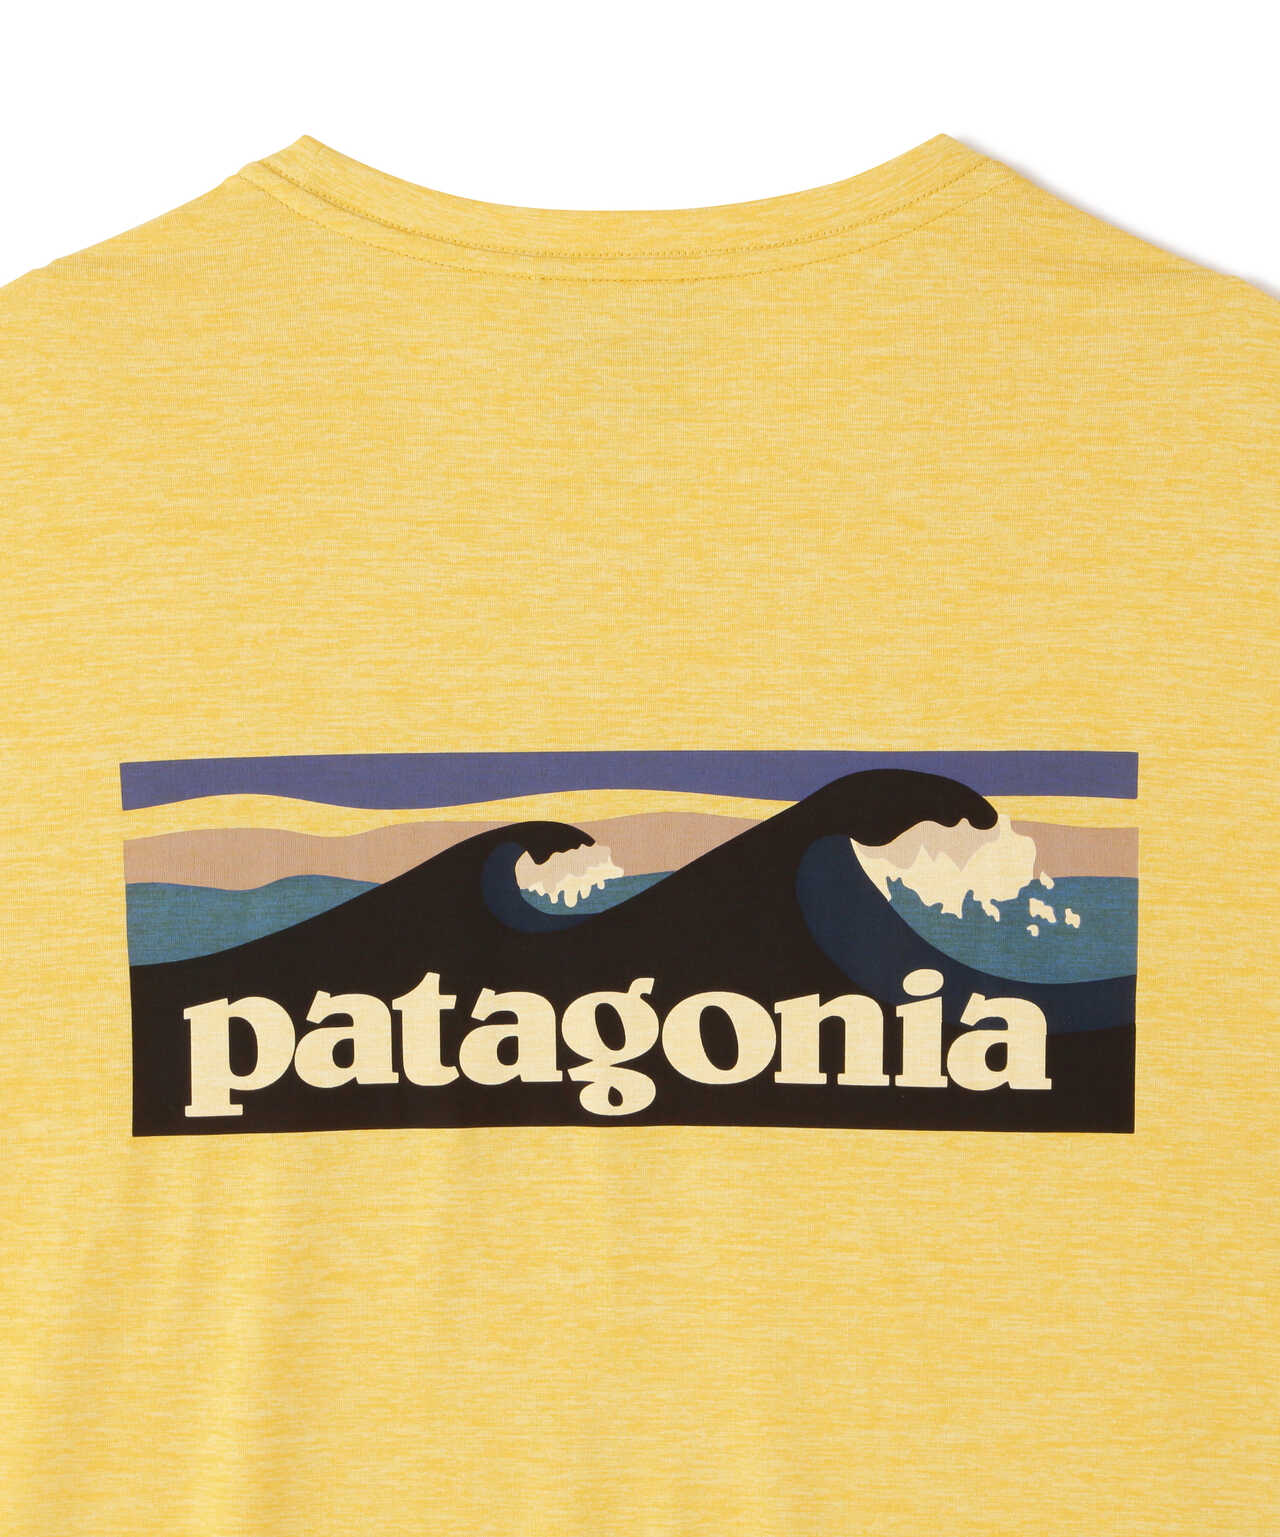 Patagonia/パタゴニア メンズ・キャプリーン・クール・デイリー 